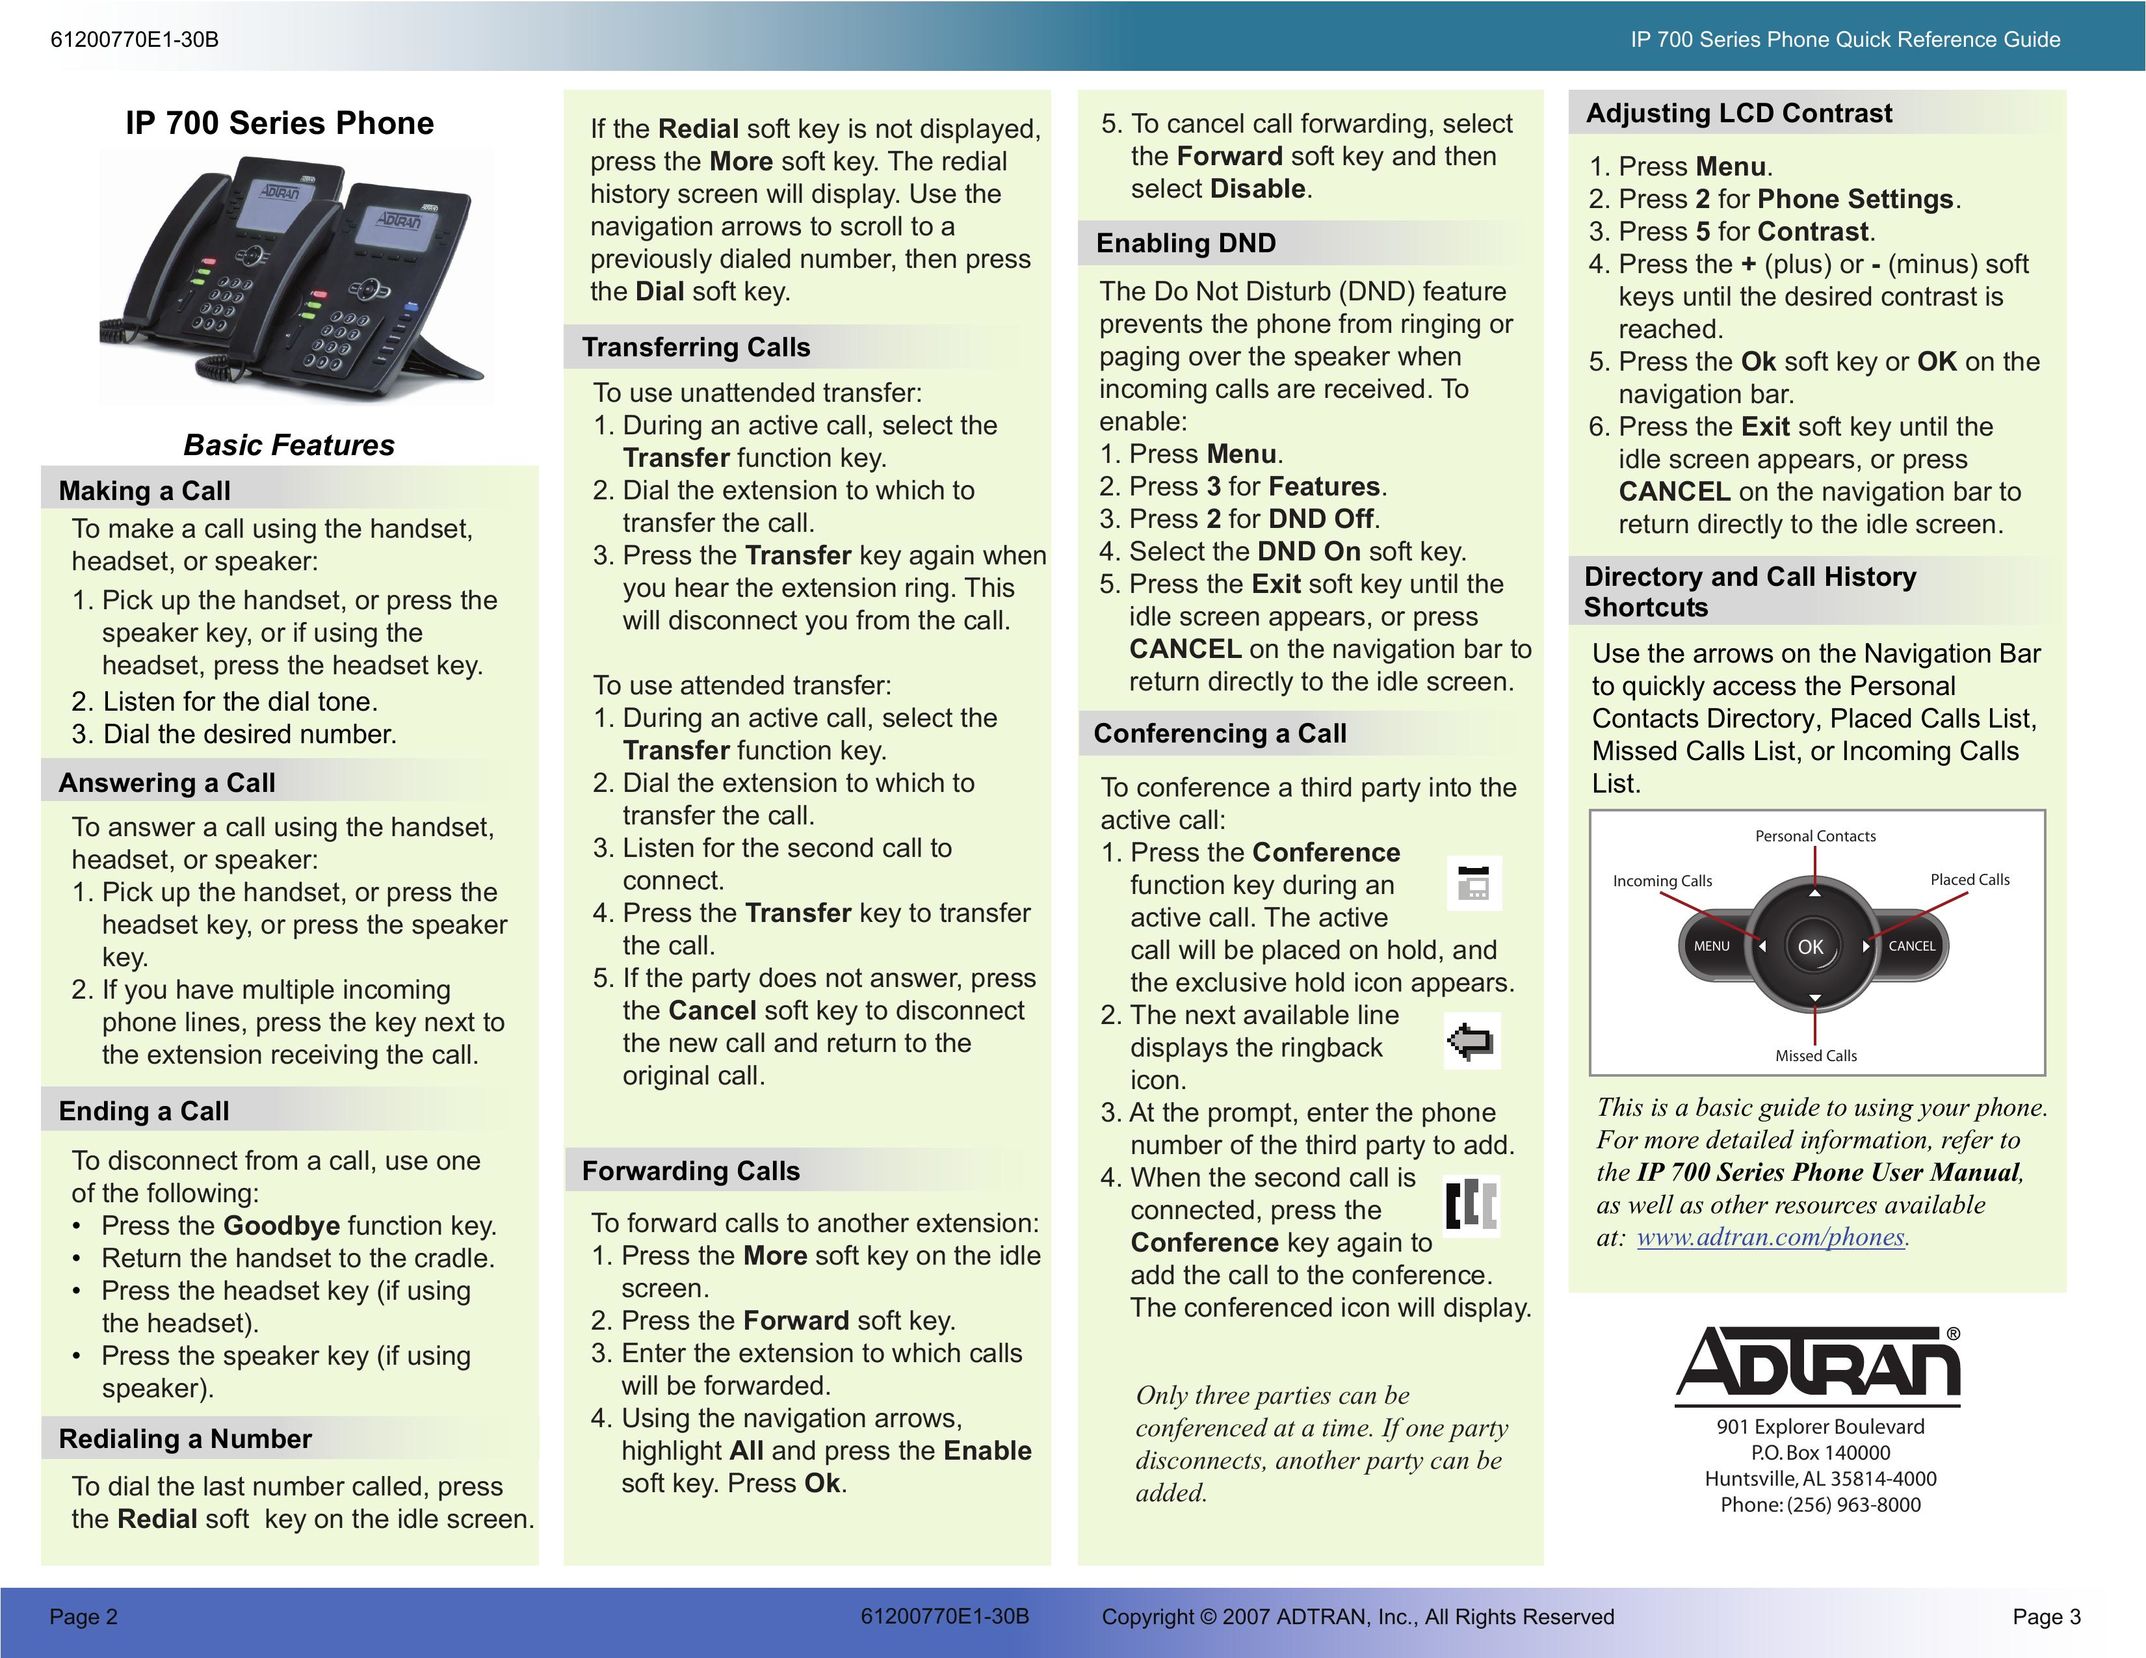 ADTRAN IP 700 Telephone User Manual